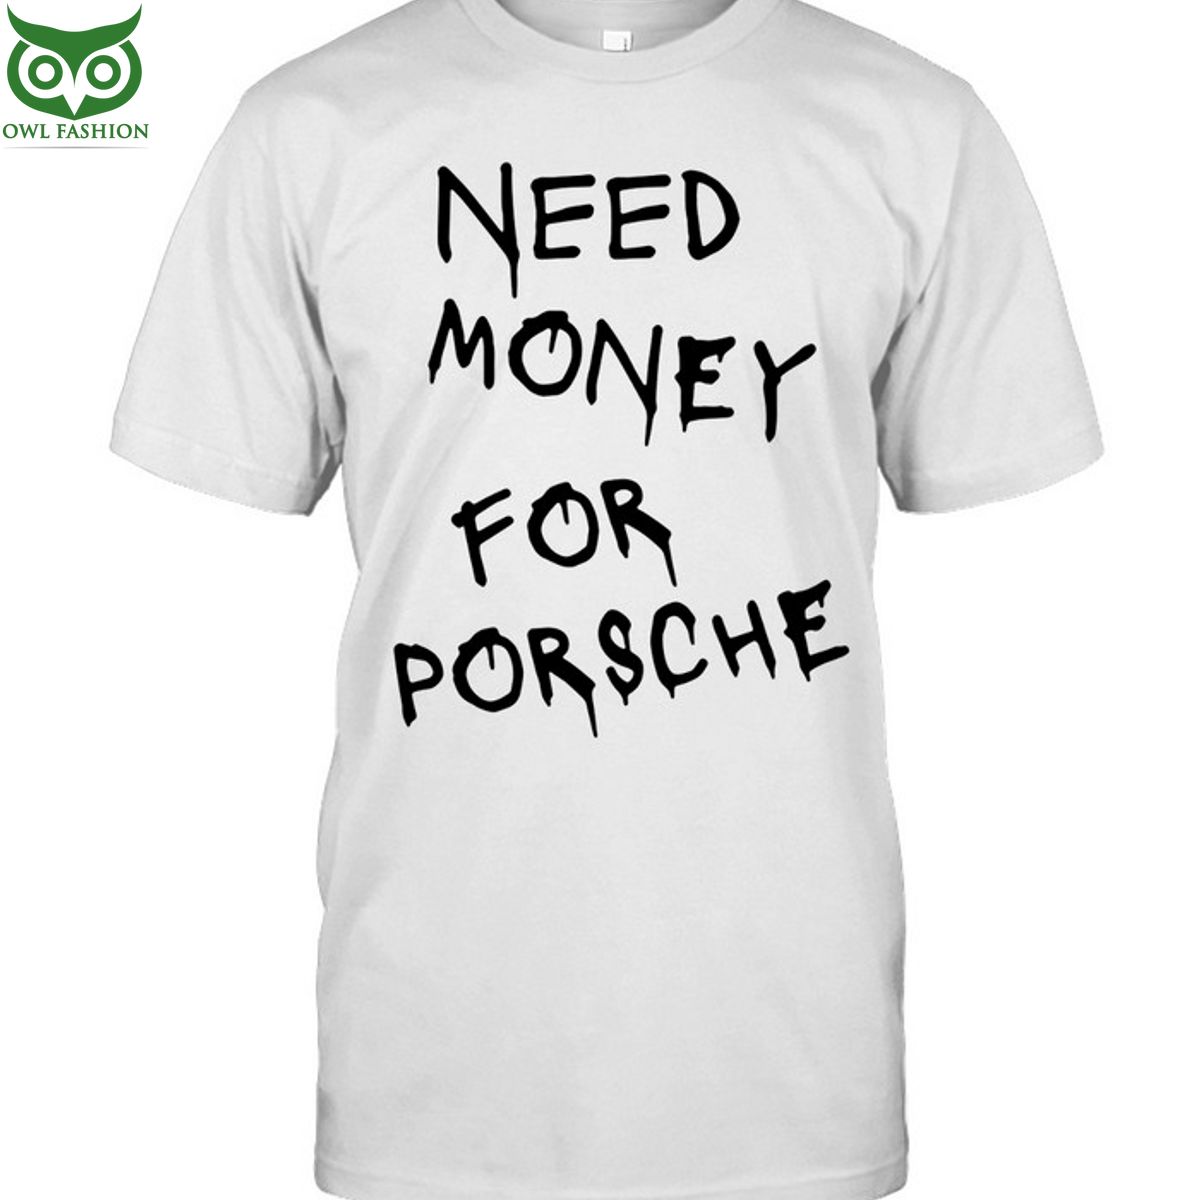 Hot Need money for porsche shirt